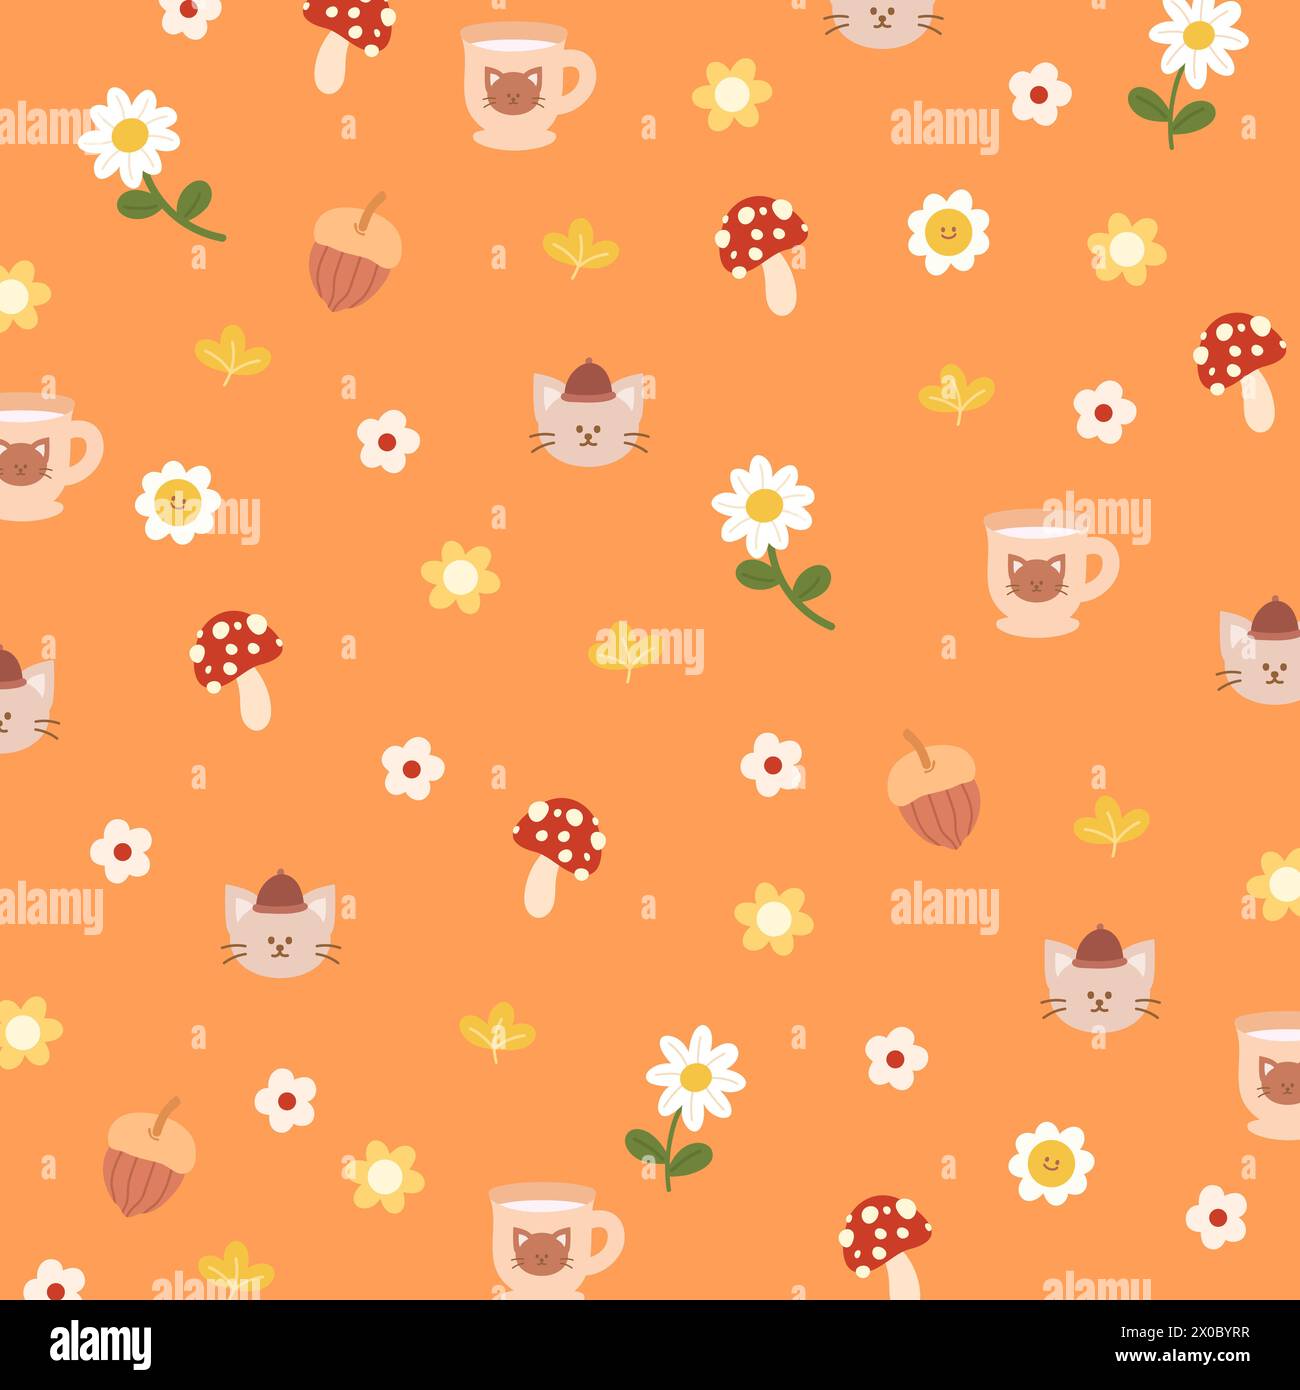 Herbstillustrationen von Katze, Nussbaum, Pilz, Blumen, gemütlichem Getränk und Blättern auf orangem Hintergrund für Tiertapete, Stoffdruck, Blumenmuster Stock Vektor